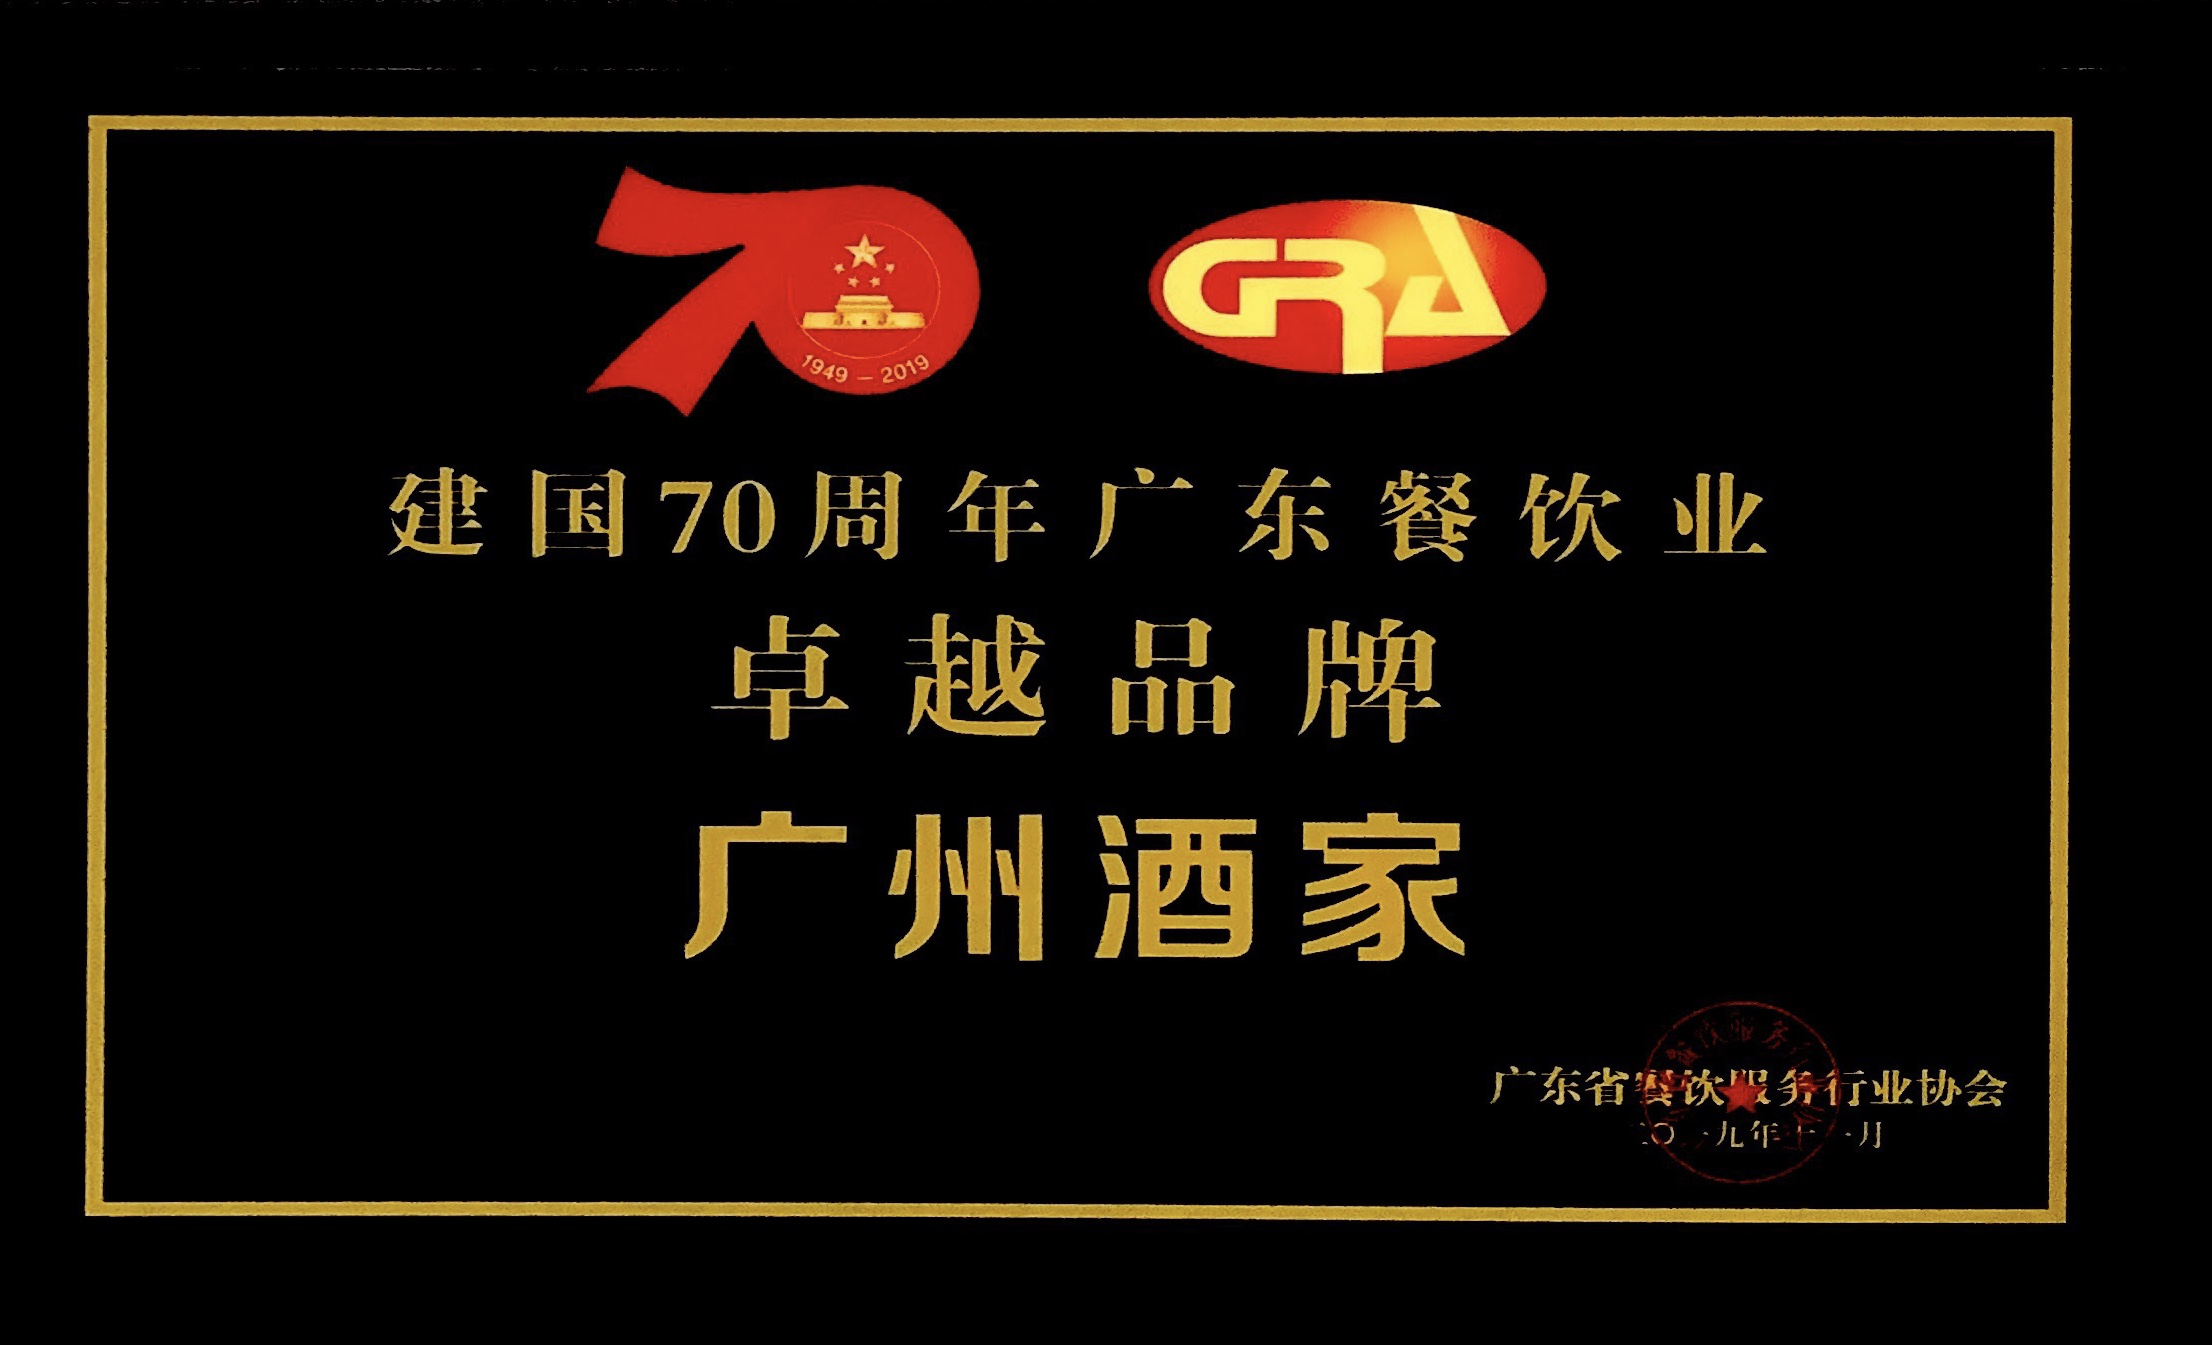 广州酒家集团荣获新中国成立70周年 “广东餐饮业卓越品牌”